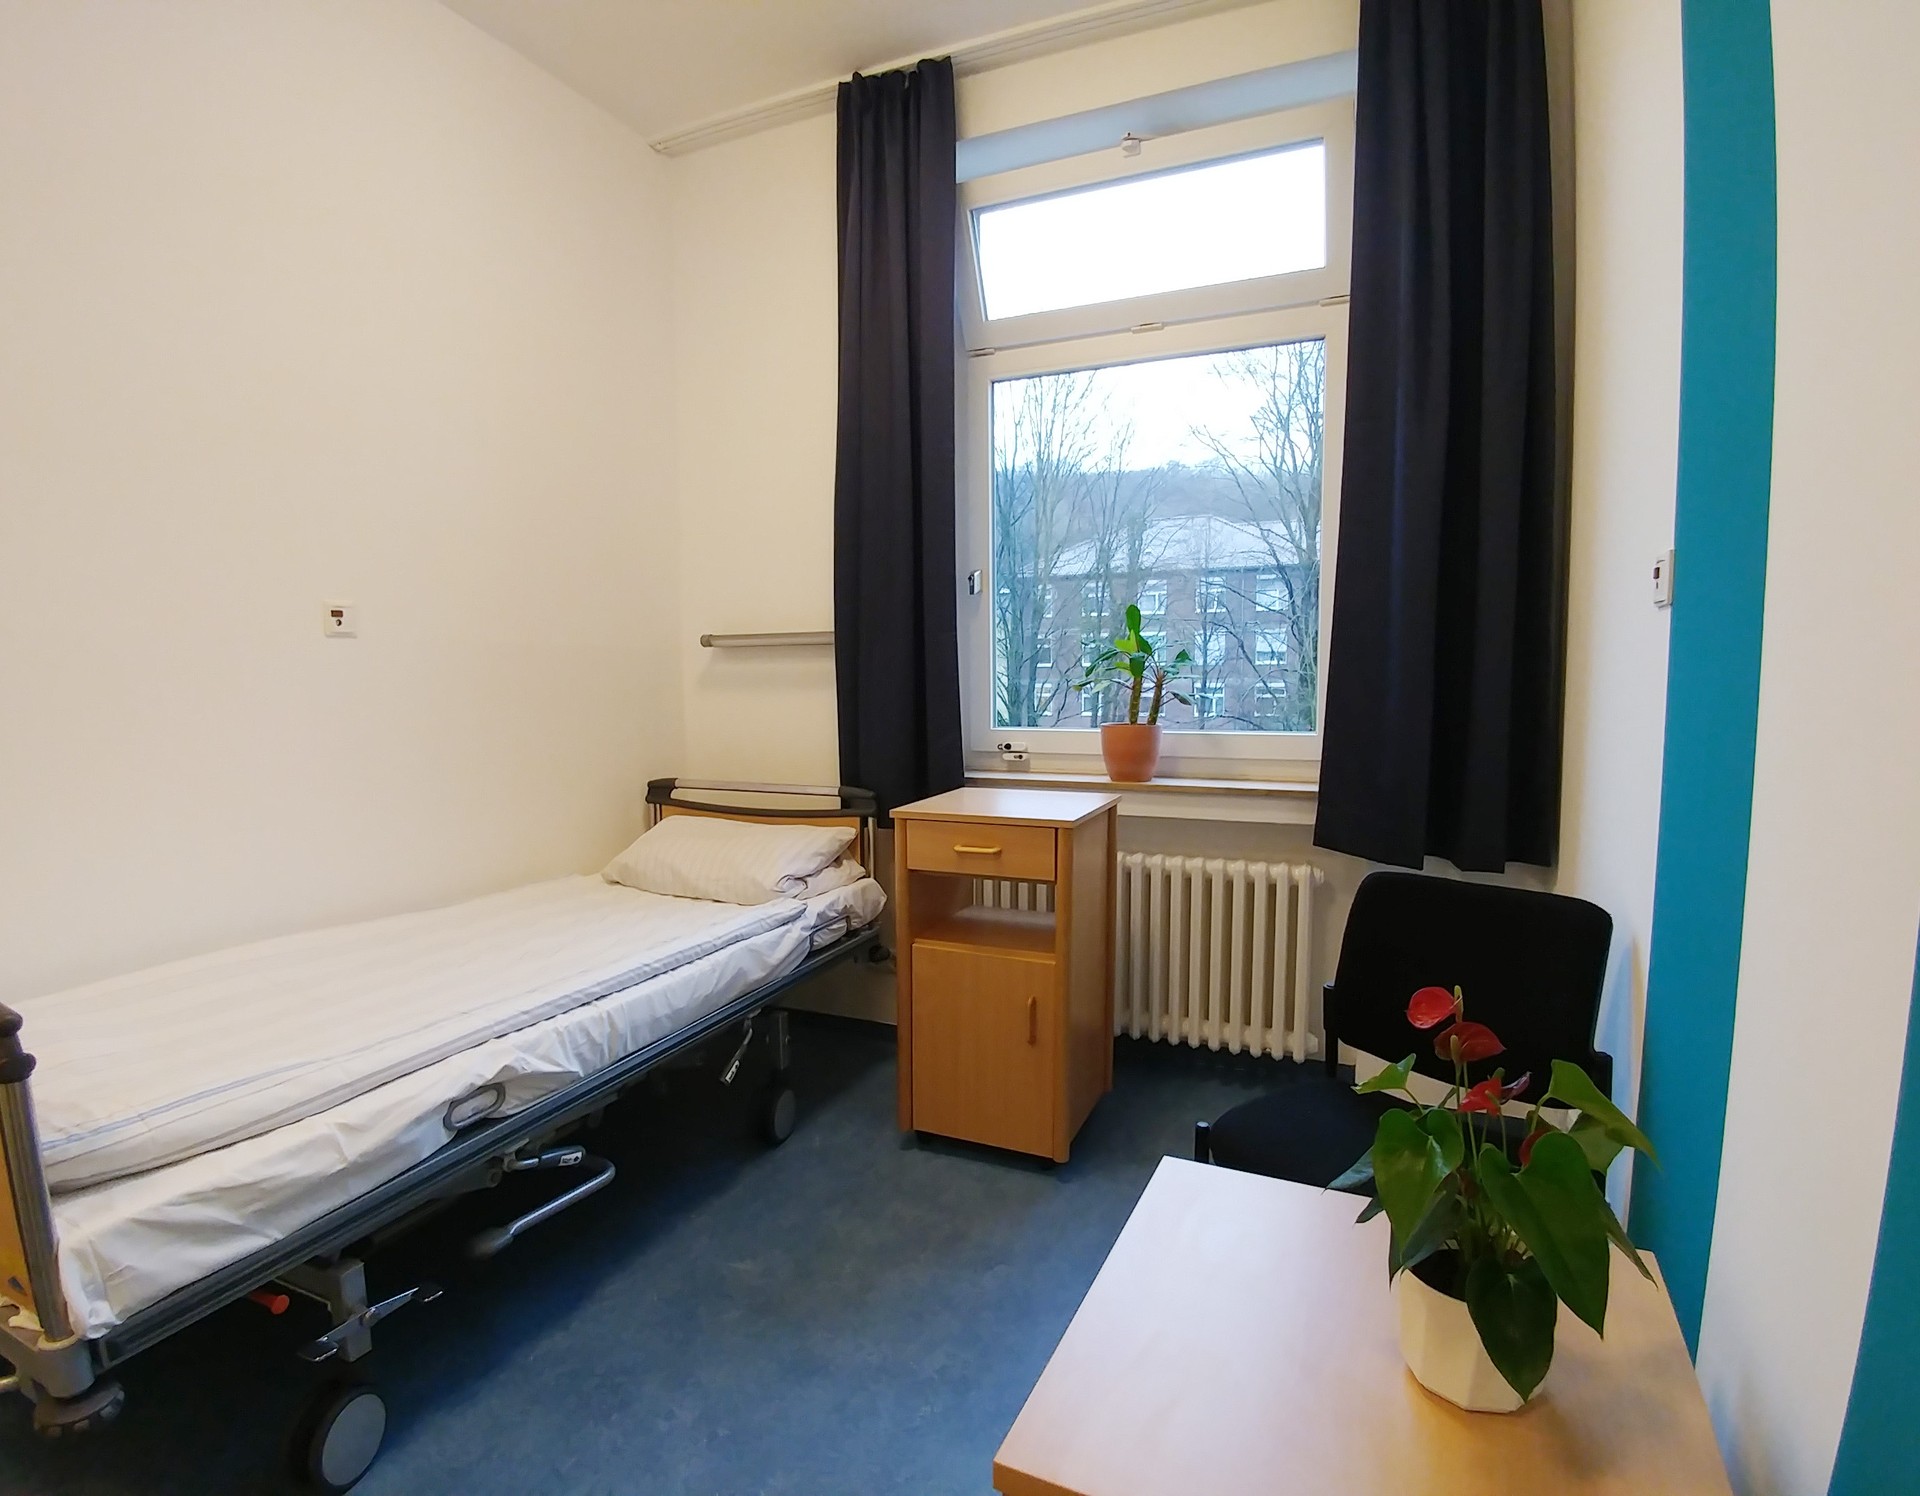 Ein Zimmer mit einem Bett, einem Fenster, rechts ein Tisch. An der rechten weißen Wand sind türkisfarbene Farbstreifen. Foto: Dr. Bernward SIegmund